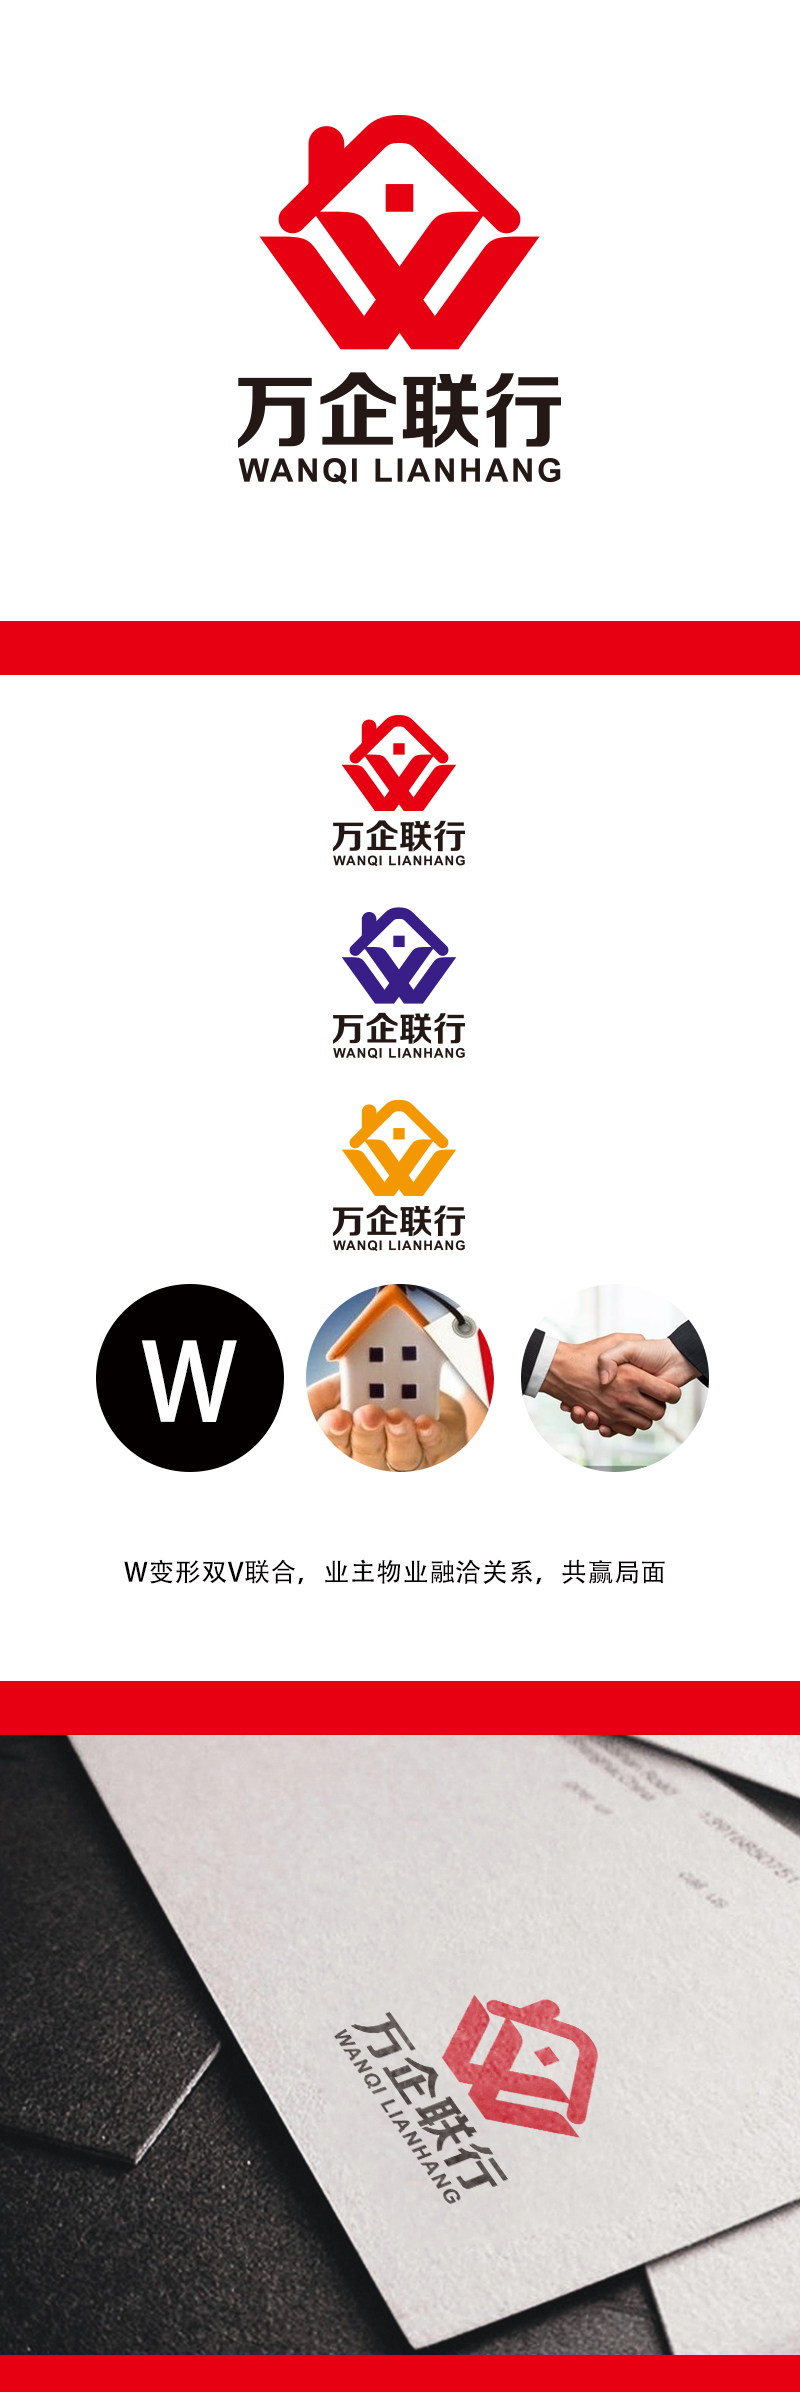 黄安悦的万企联行物业服务有限公司logo设计